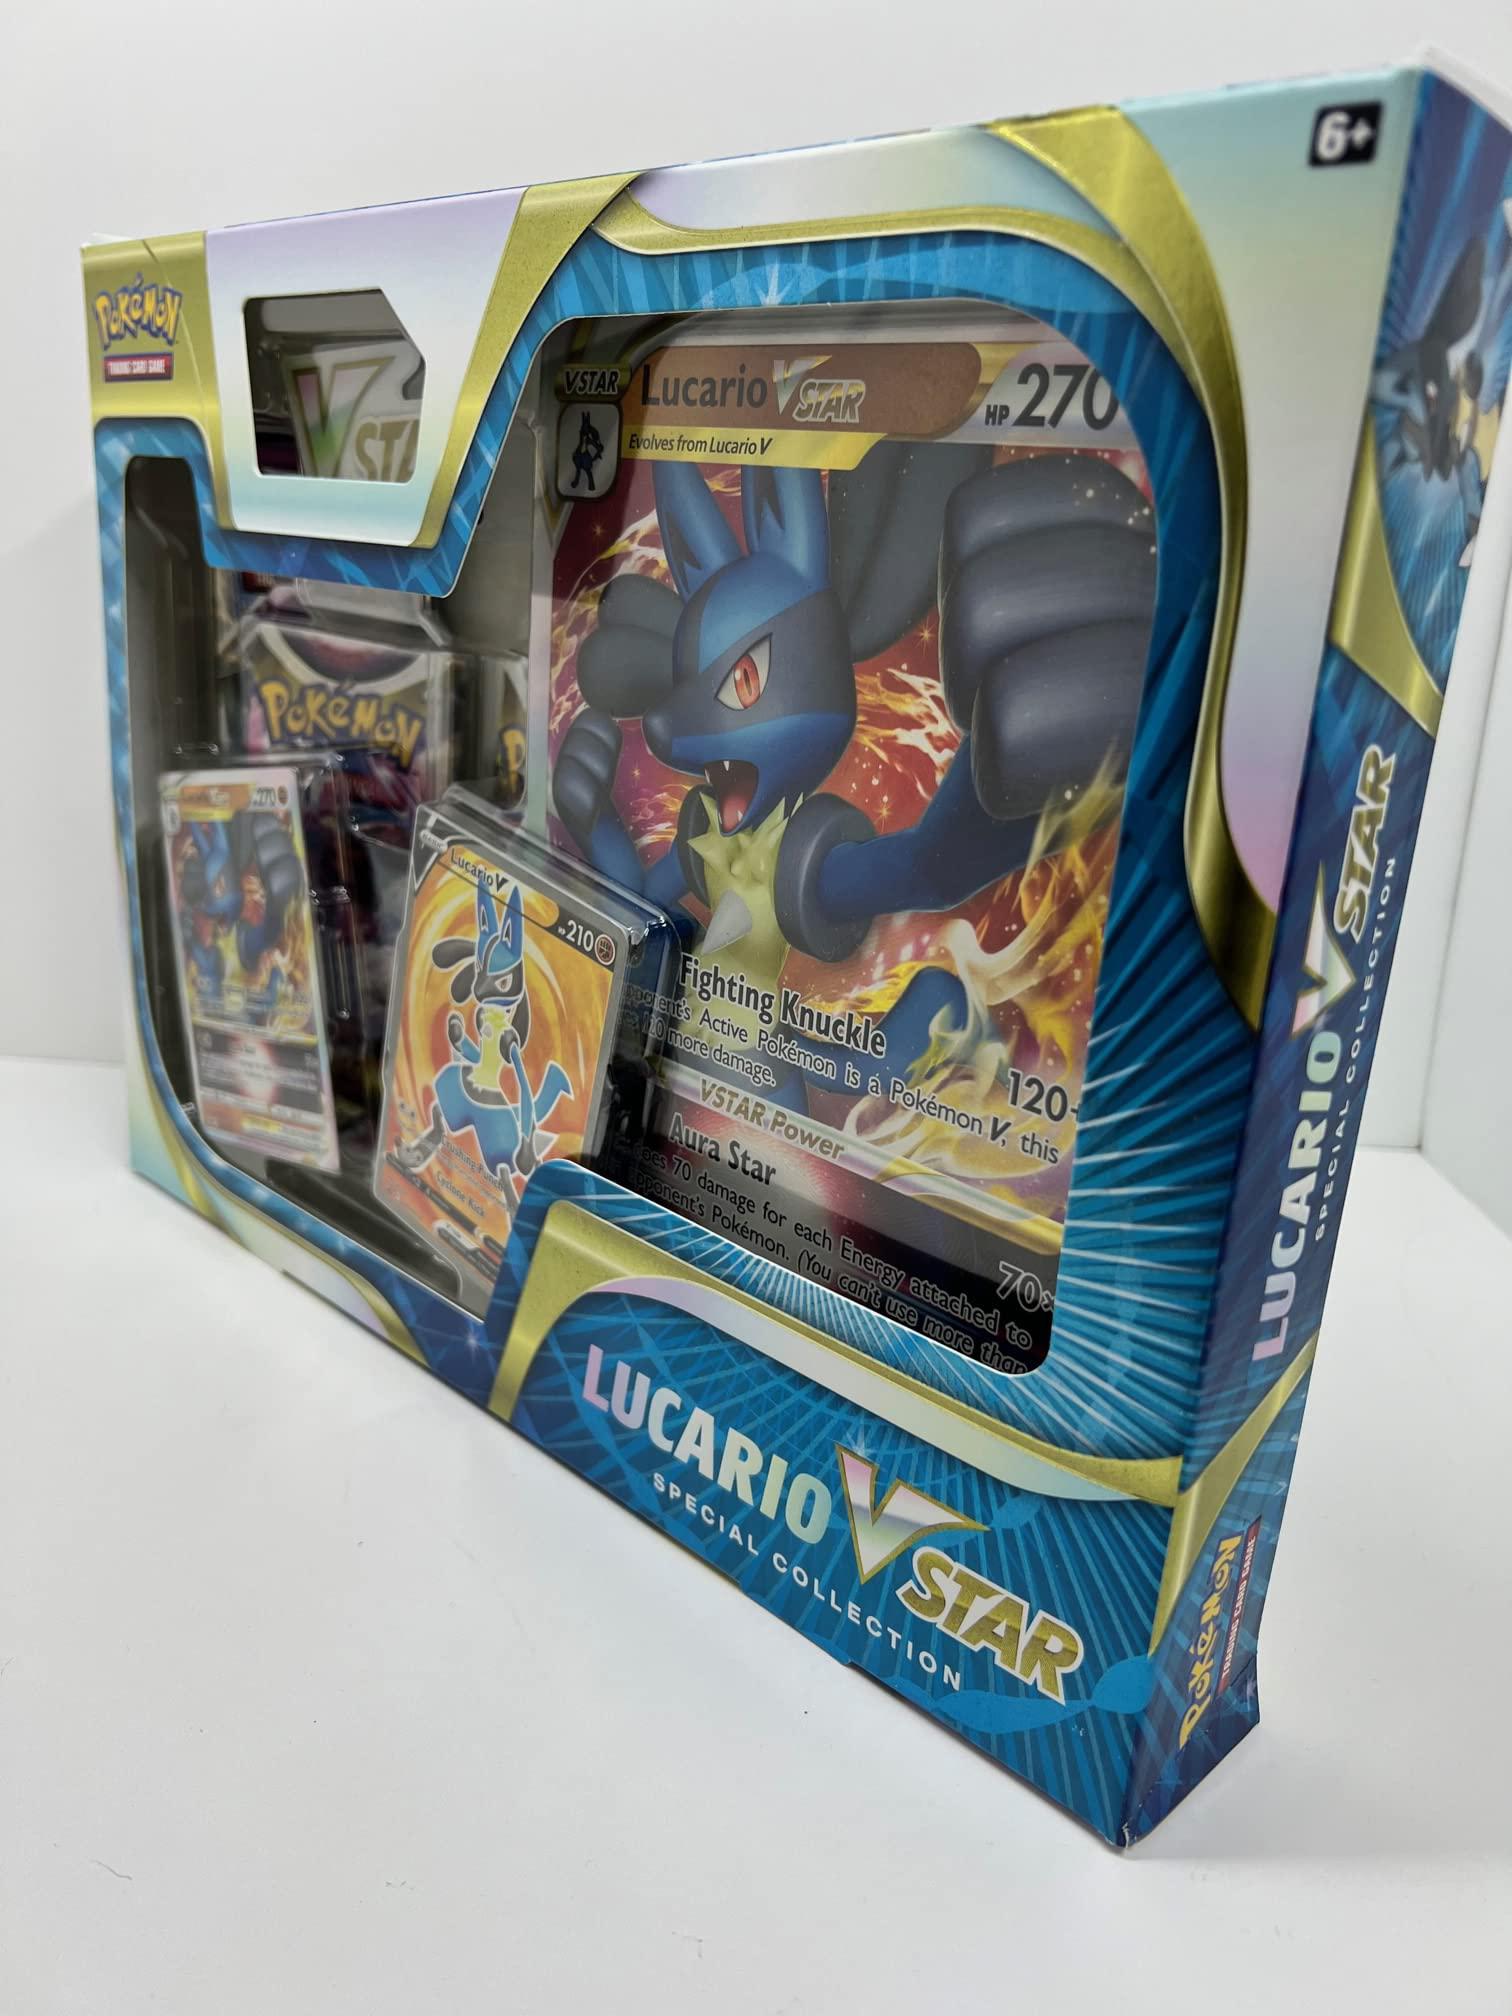 pokemon tcg: lucario vstar special collection box